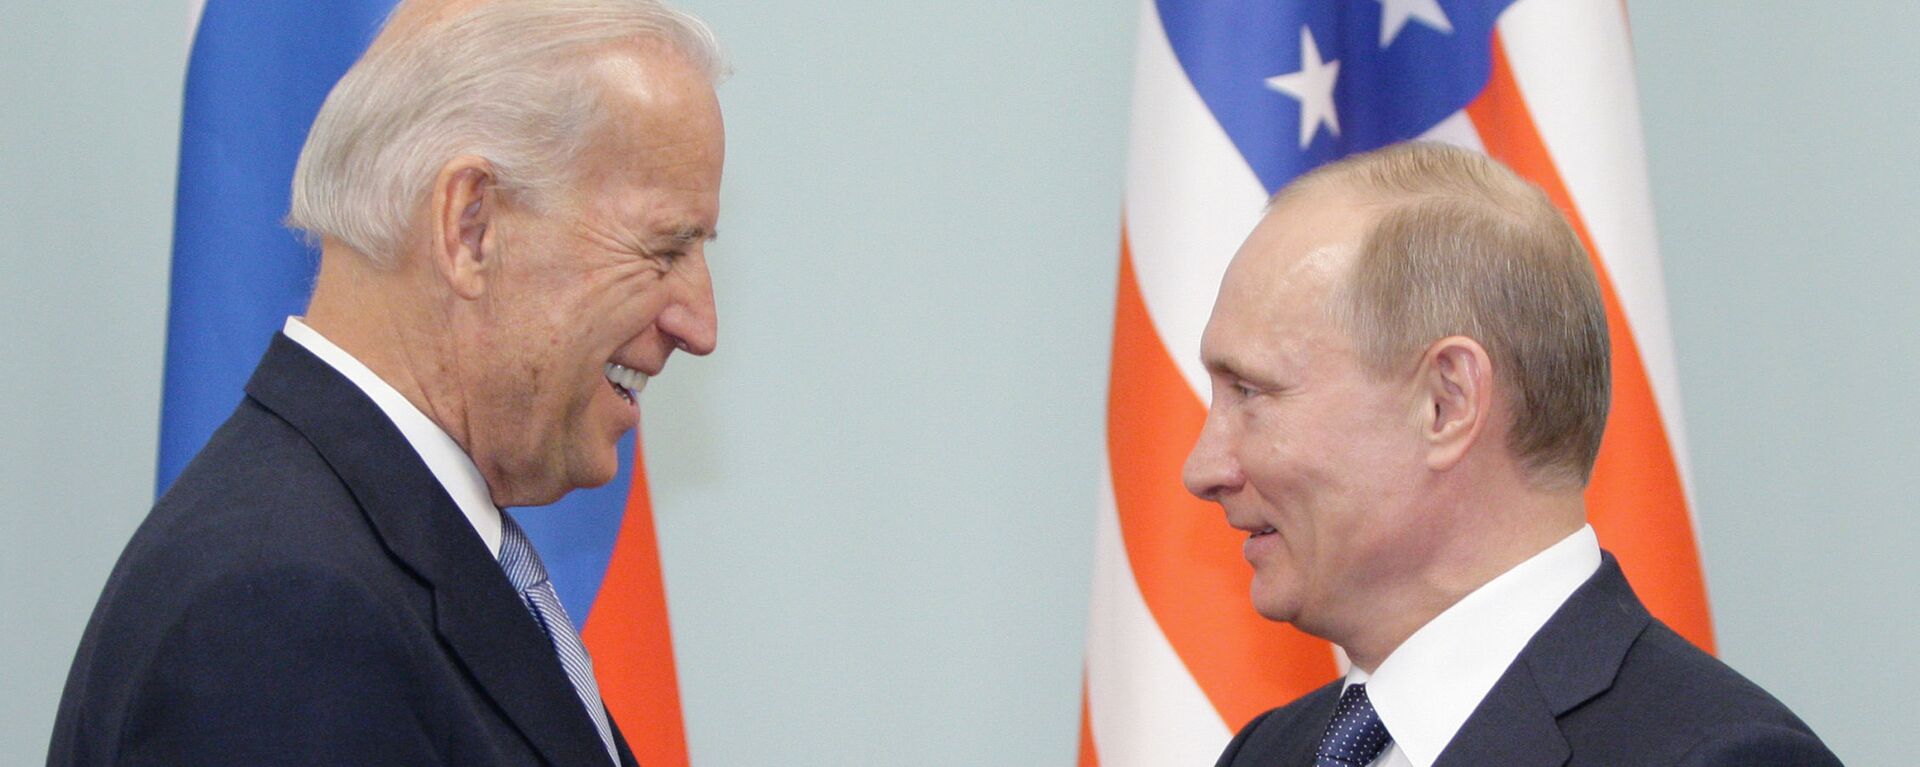 Встреча Владимира Путина с Джозефом Байденом в Москве - Sputnik Узбекистан, 1920, 29.05.2021